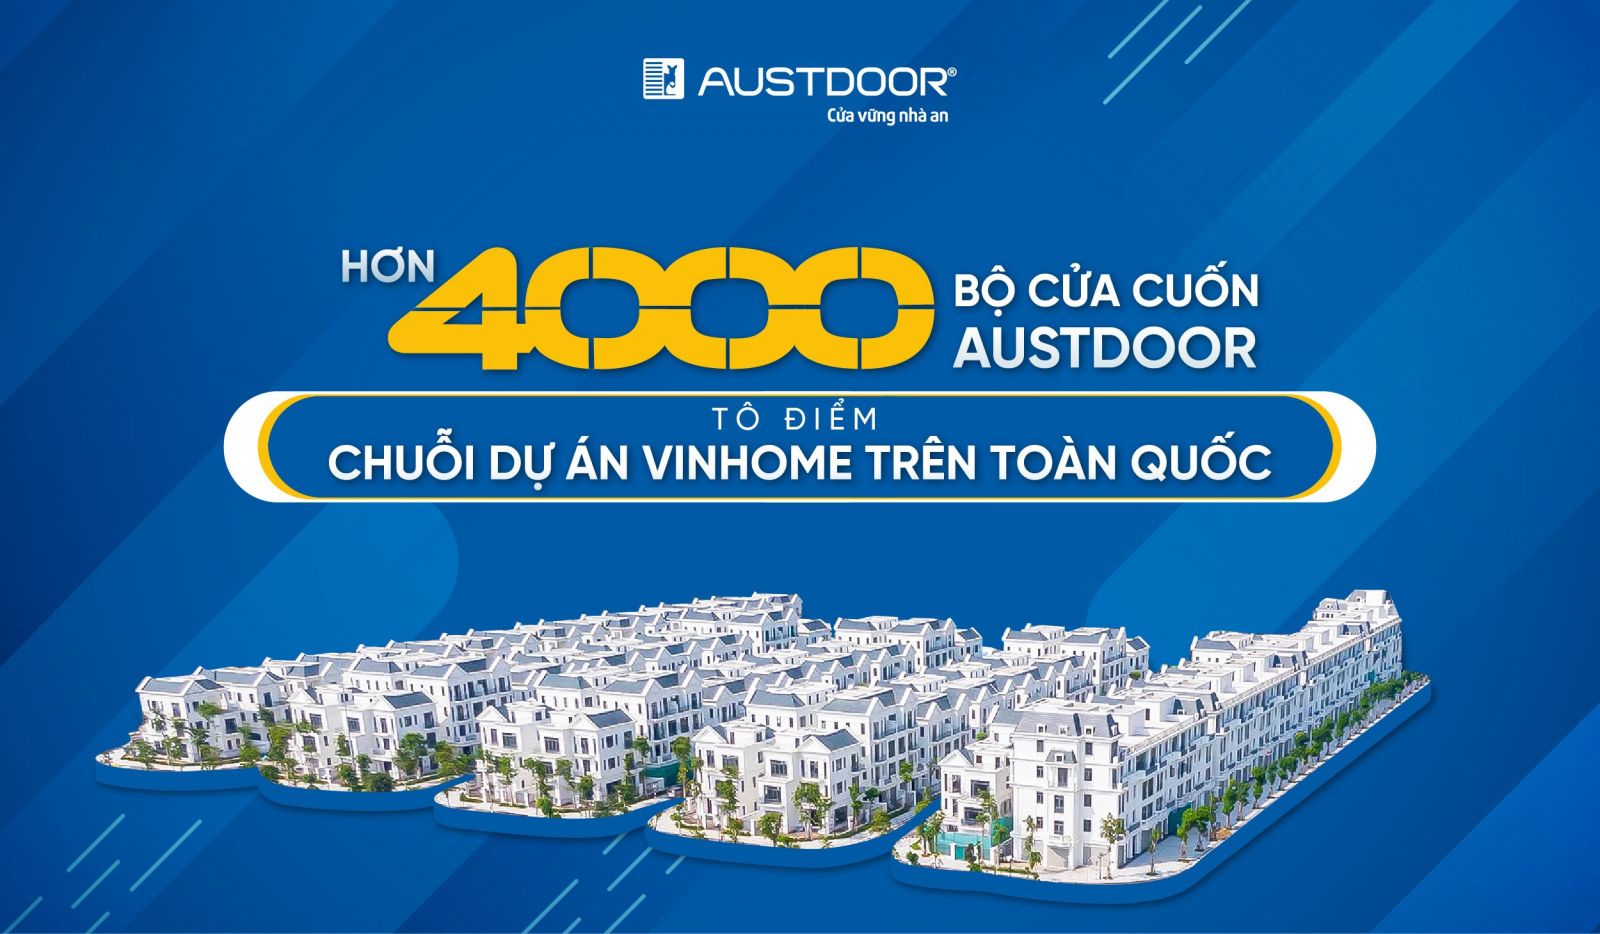 Cửa cuốn Austdoor là lựa chọn hàng đầu của chuỗi dự án Vinhome toàn quốc H1